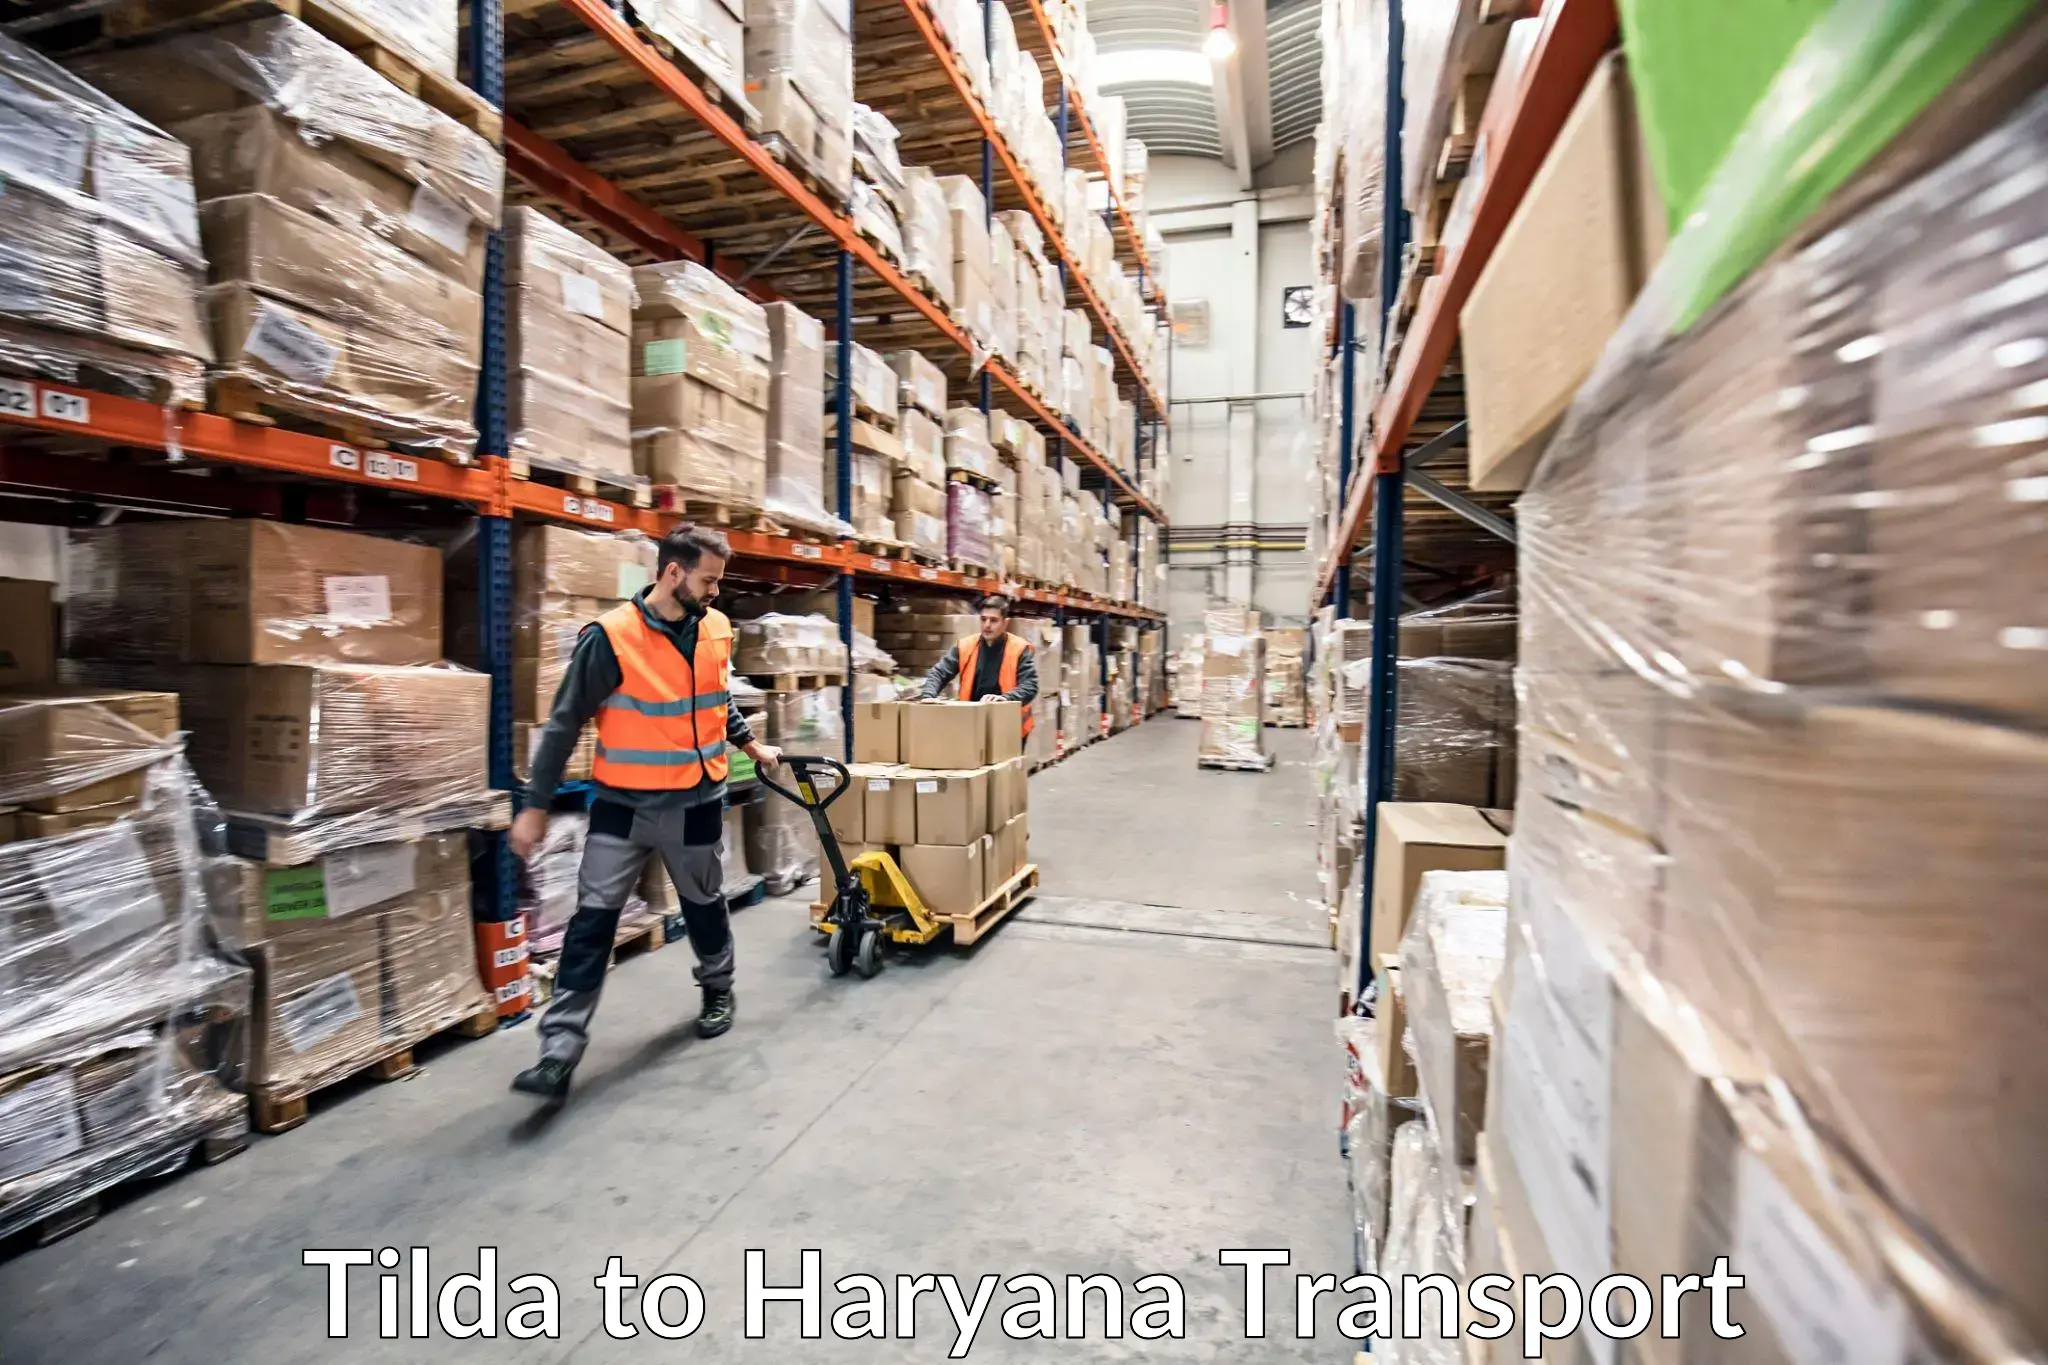 Daily parcel service transport Tilda to Hansi